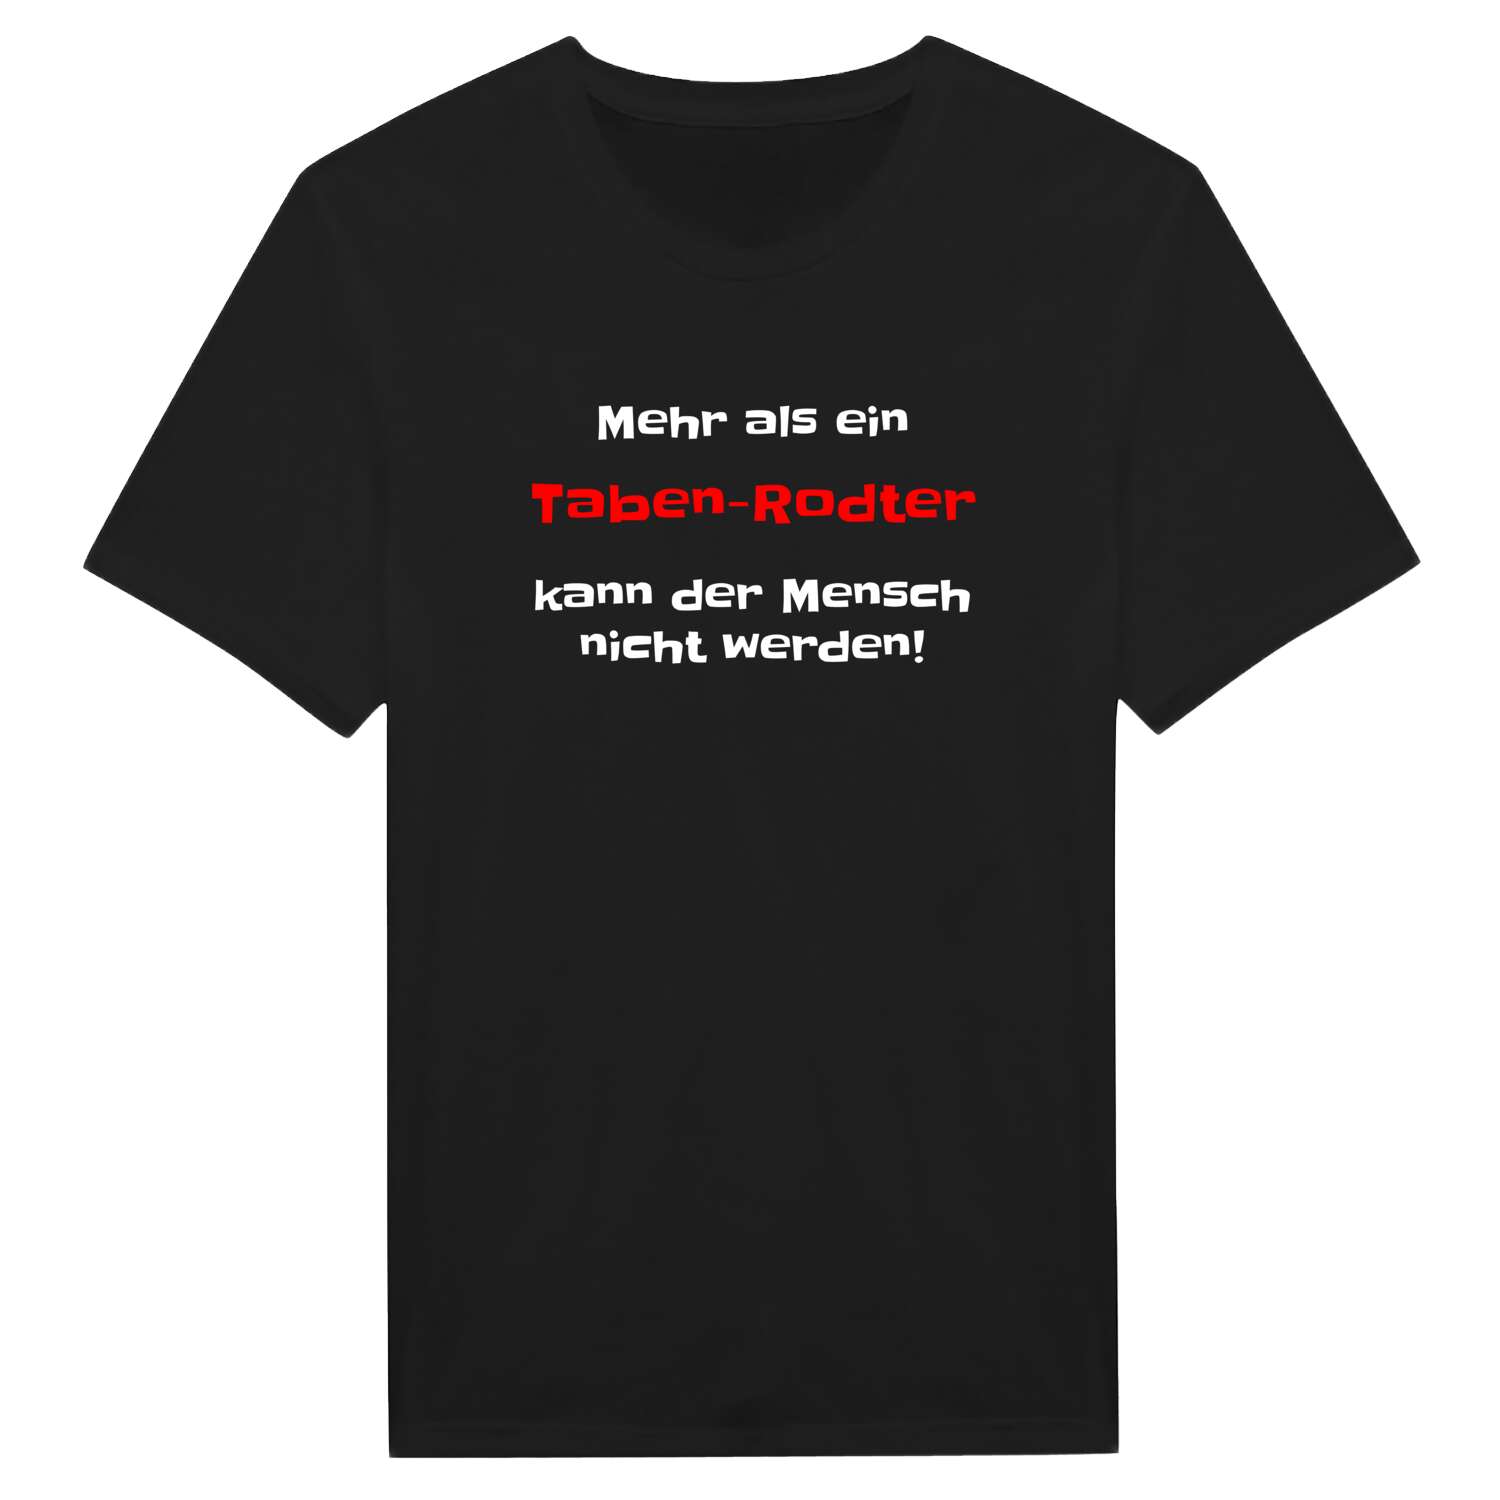 Taben-Rodt T-Shirt »Mehr als ein«